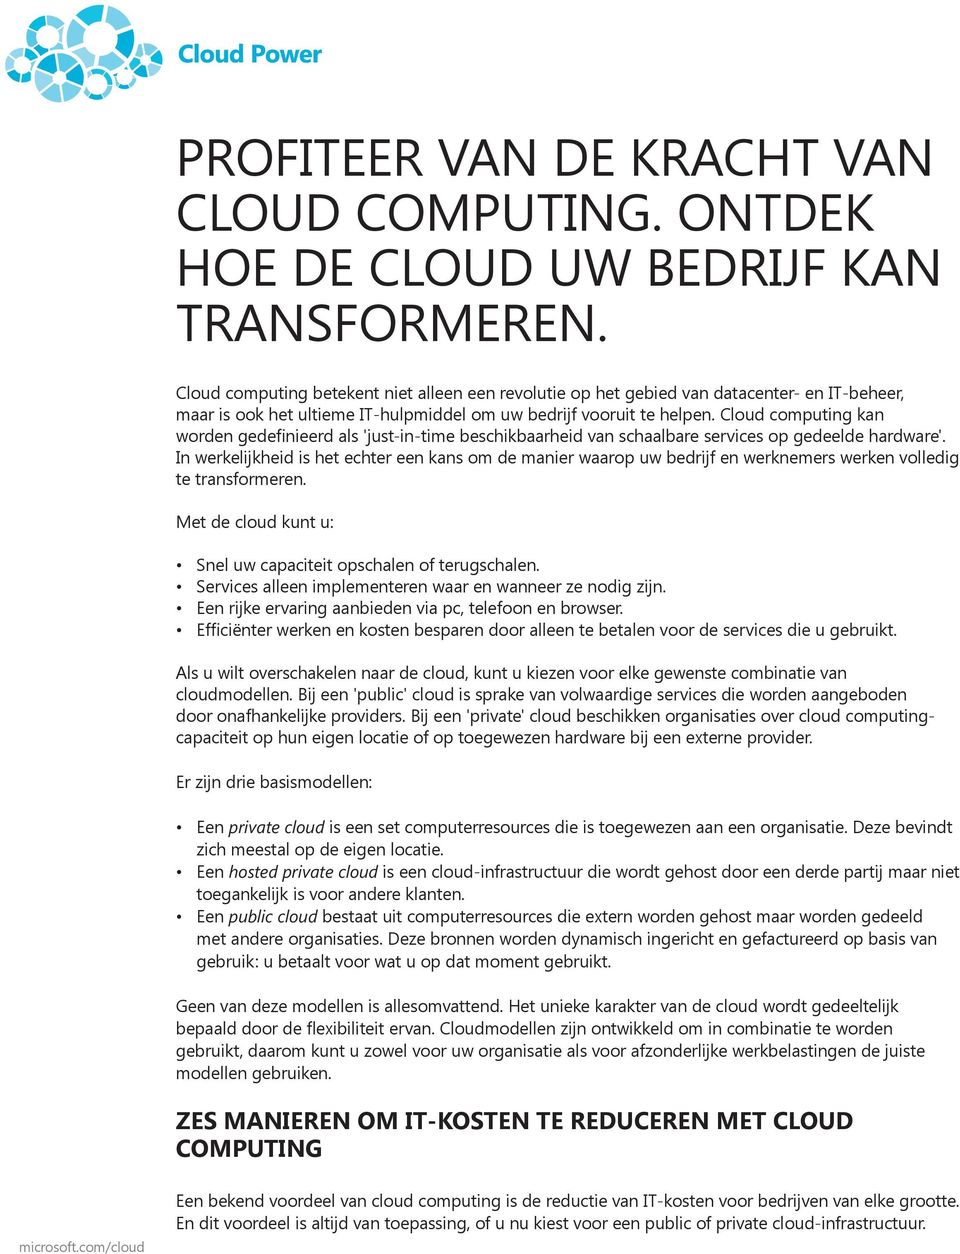 Cloud computing kan worden gedefinieerd als 'just-in-time beschikbaarheid van schaalbare services op gedeelde hardware'.